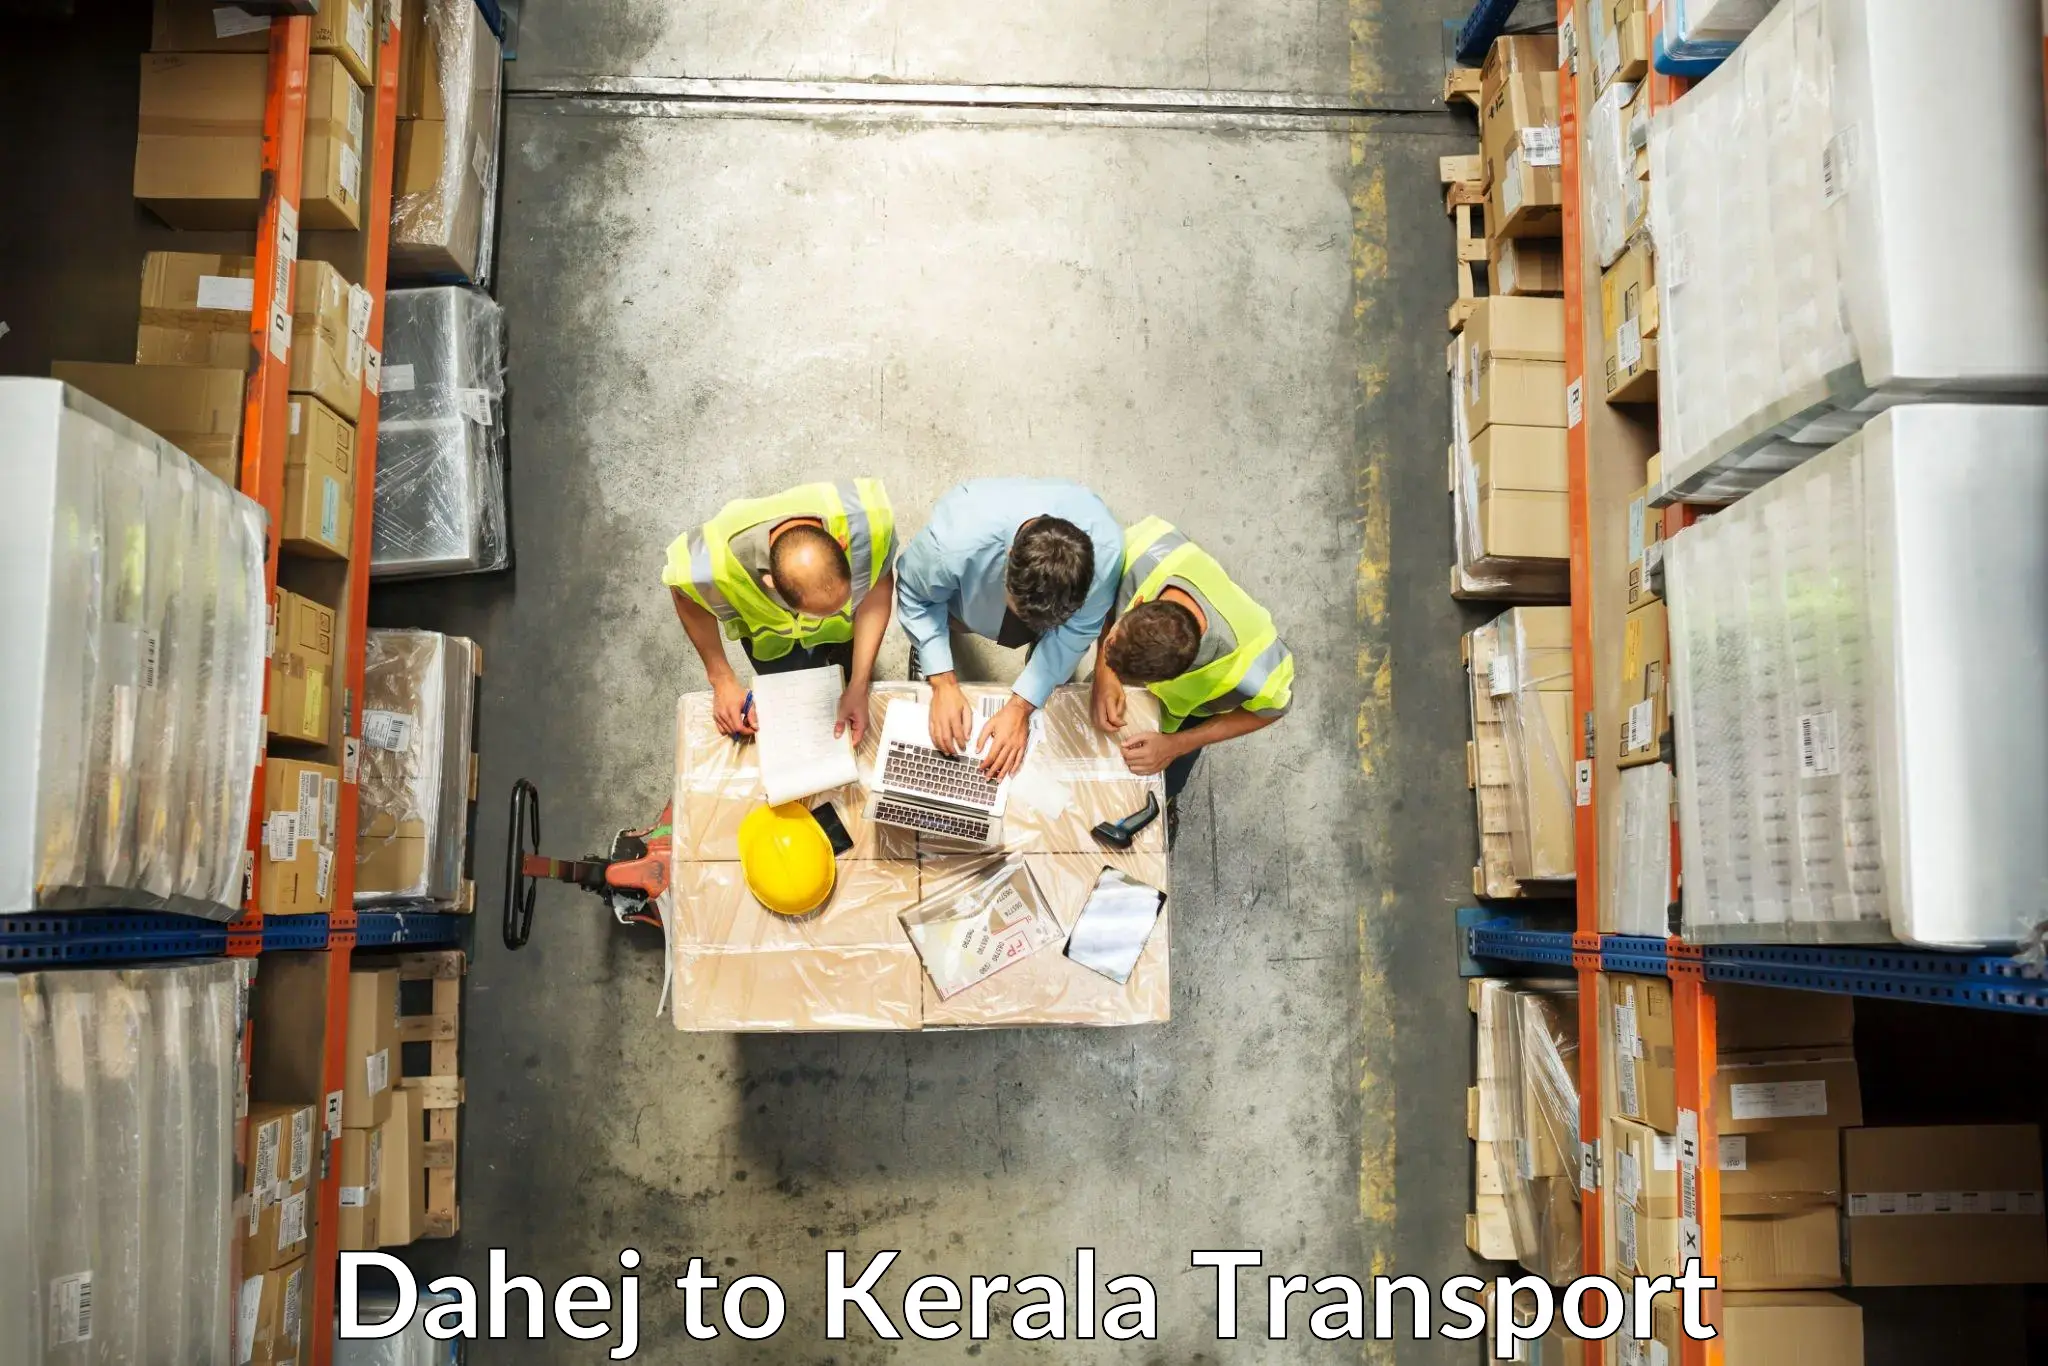 Container transport service Dahej to Koyilandy